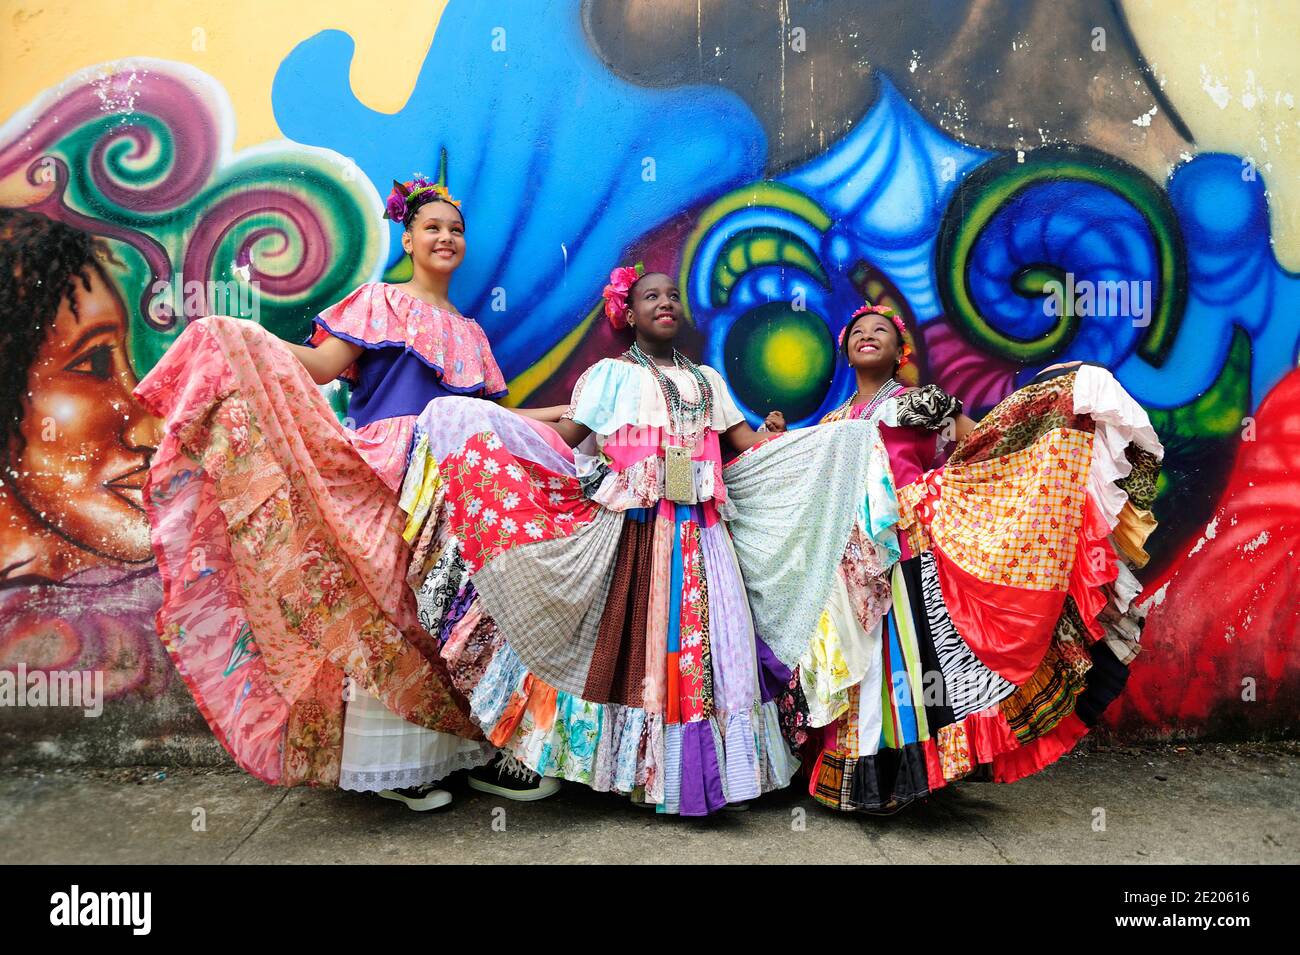 Ragazze panamaniane che indossano il conga pollera, un costume tipico panamense, a Portobelo, Panama, durante il Festival di Congos e Diablos. Foto Stock